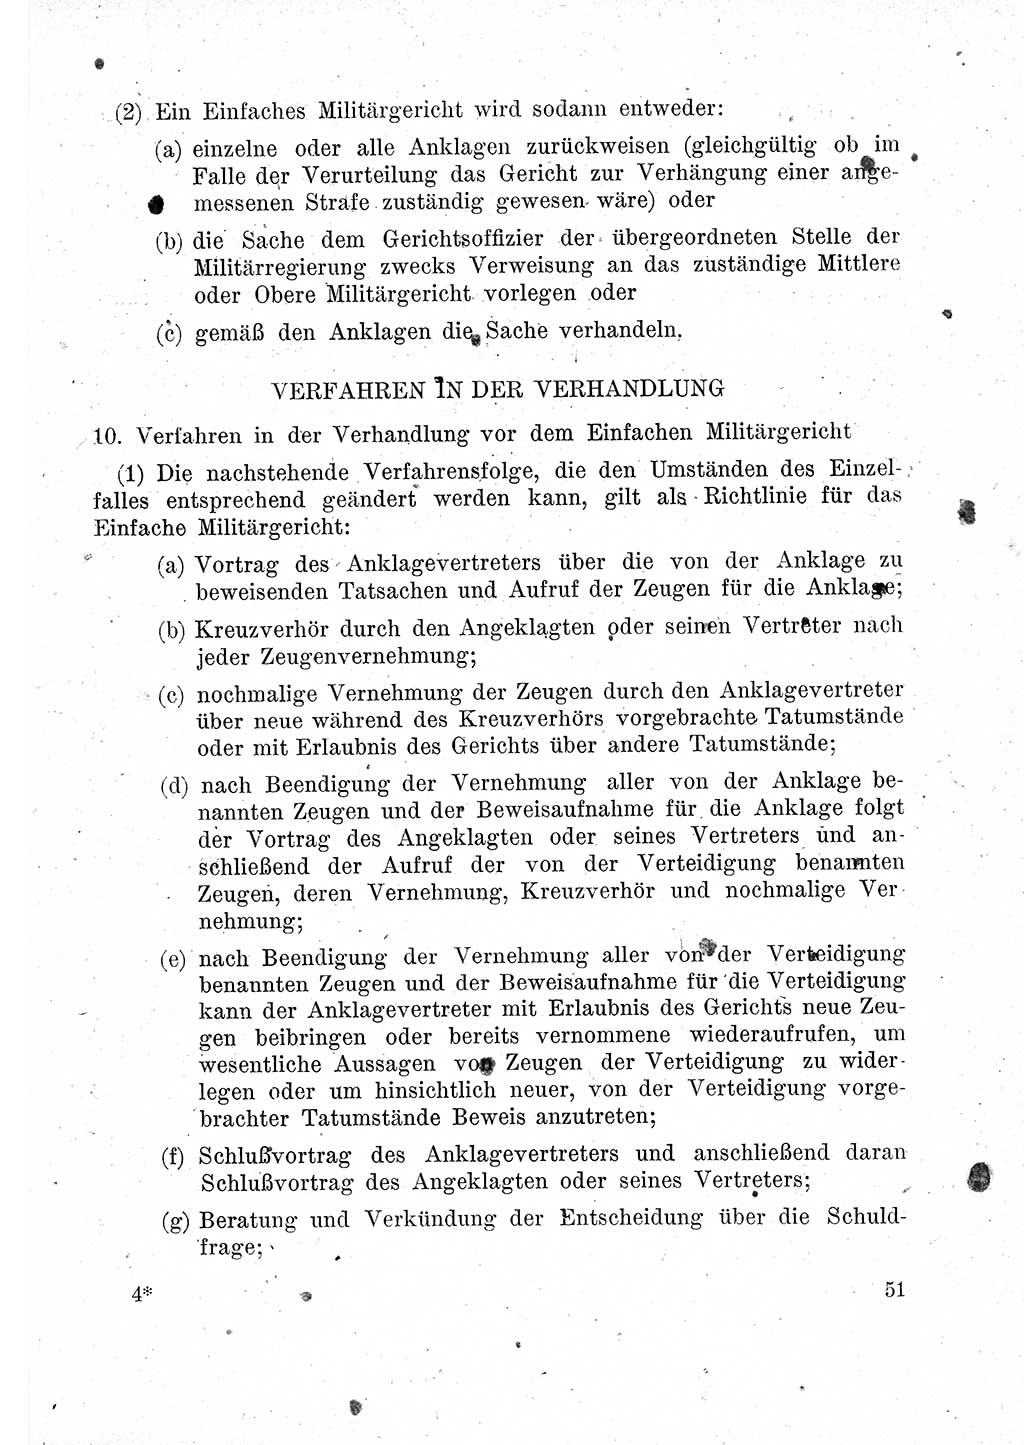 Das Recht der Besatzungsmacht (Deutschland), Proklamationen, Deklerationen, Verordnungen, Gesetze und Bekanntmachungen 1947, Seite 51 (R. Bes. Dtl. 1947, S. 51)